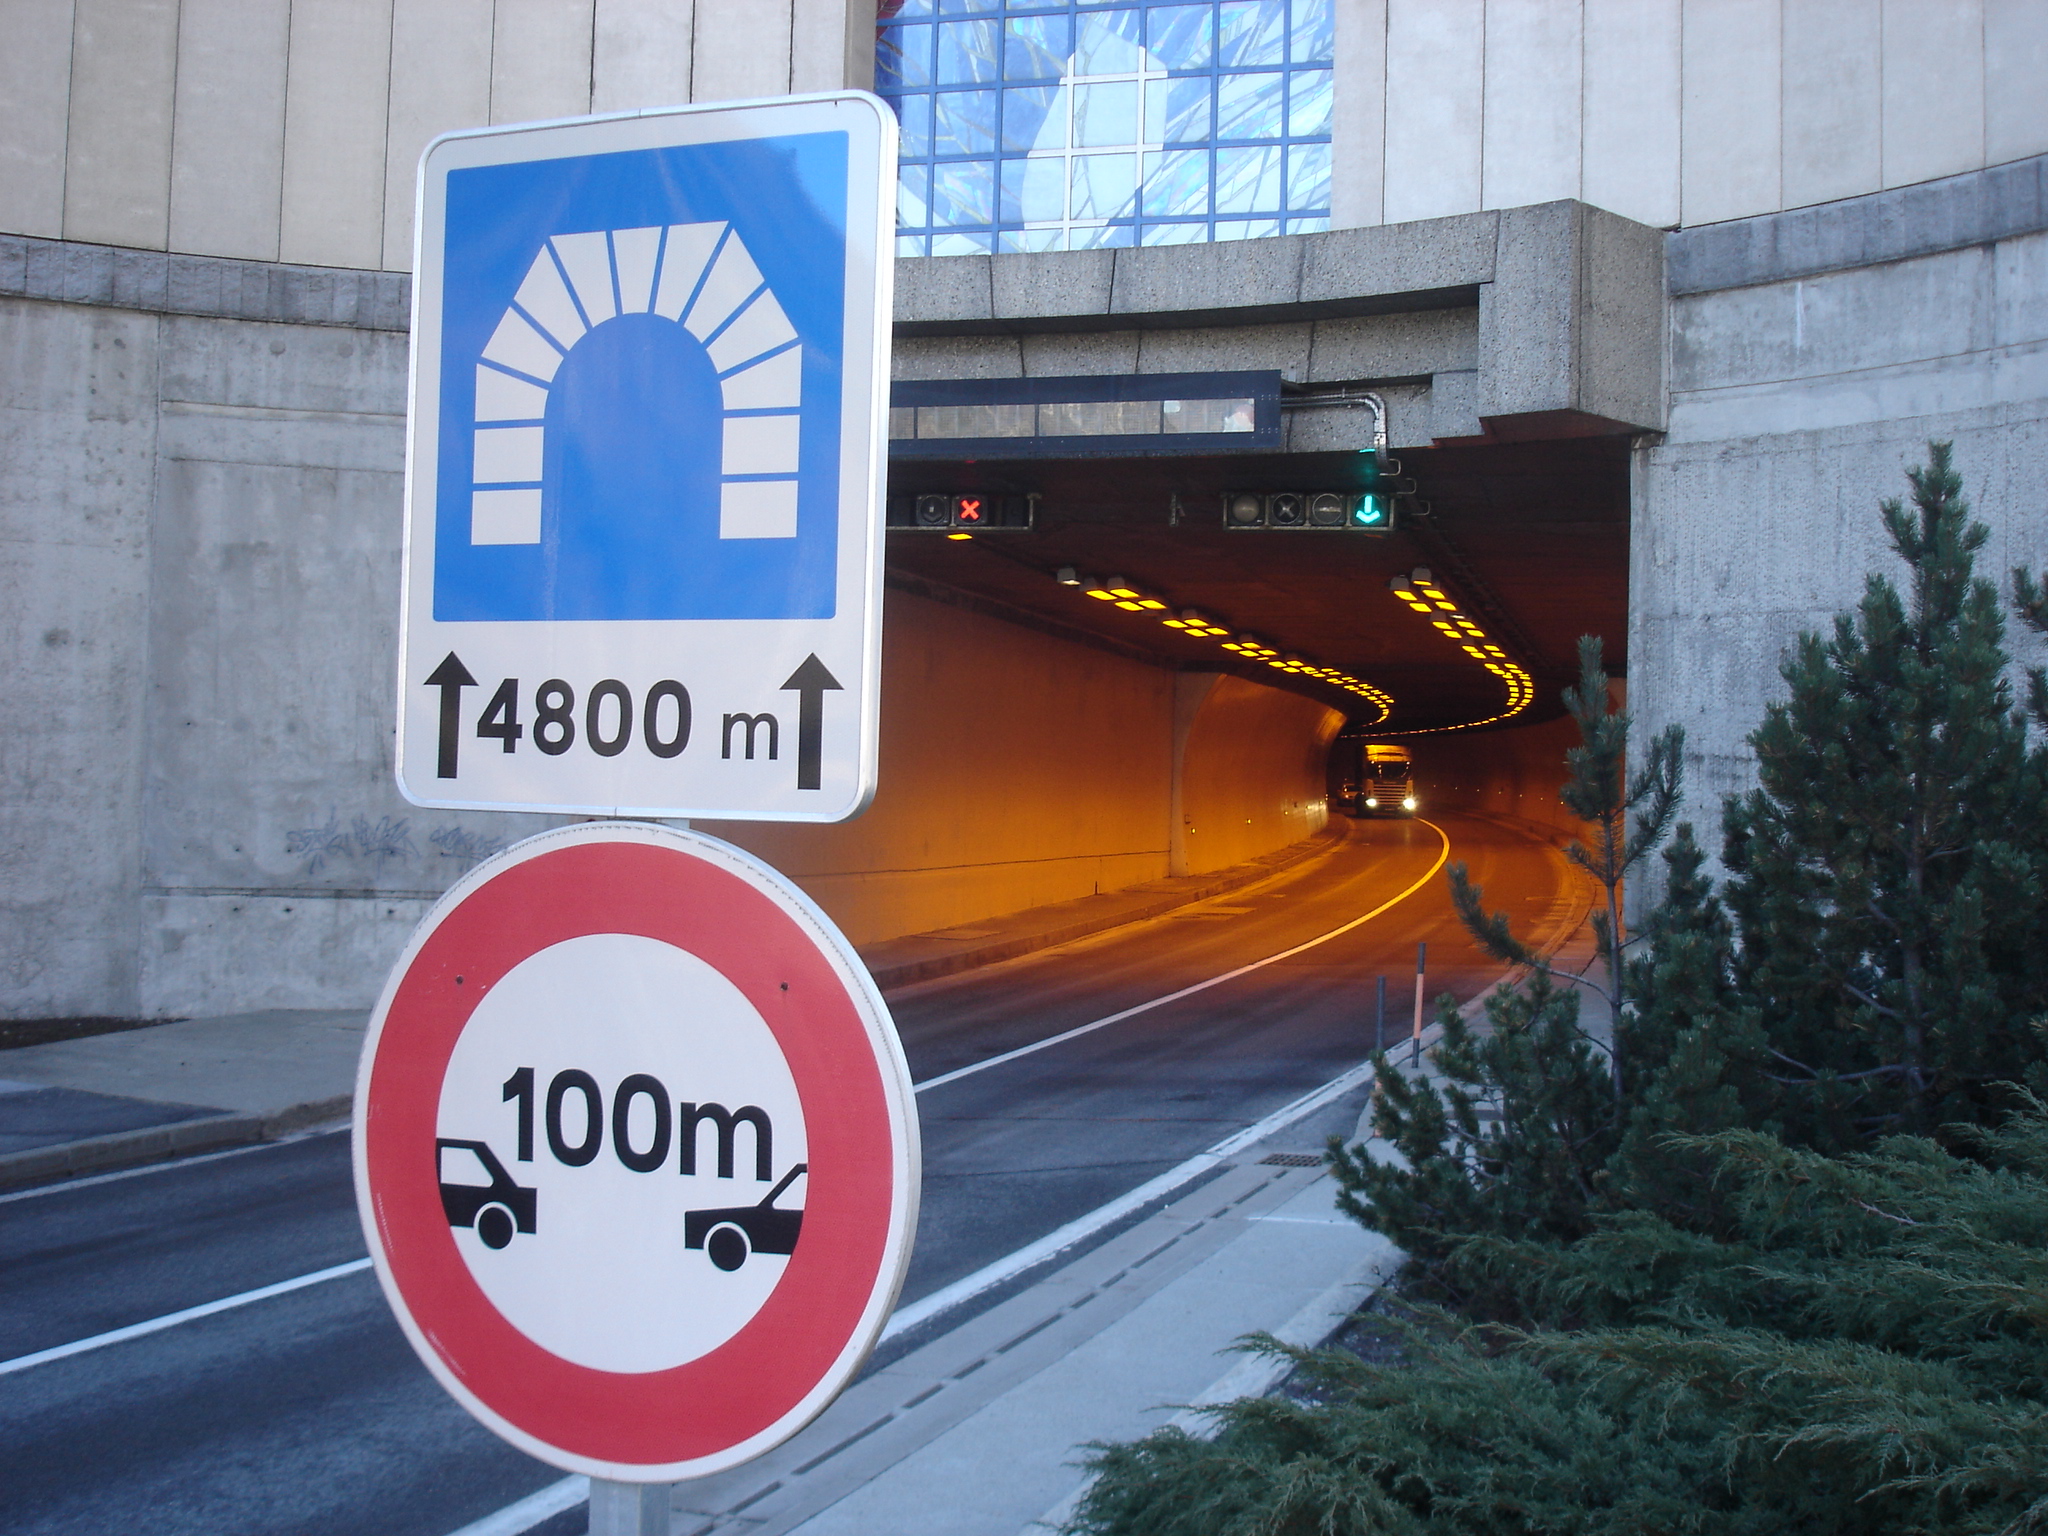 Fig. 2: Señales en una boca de túnel que indican la longitud y la distancia que debe mantenerse entre los vehículos.